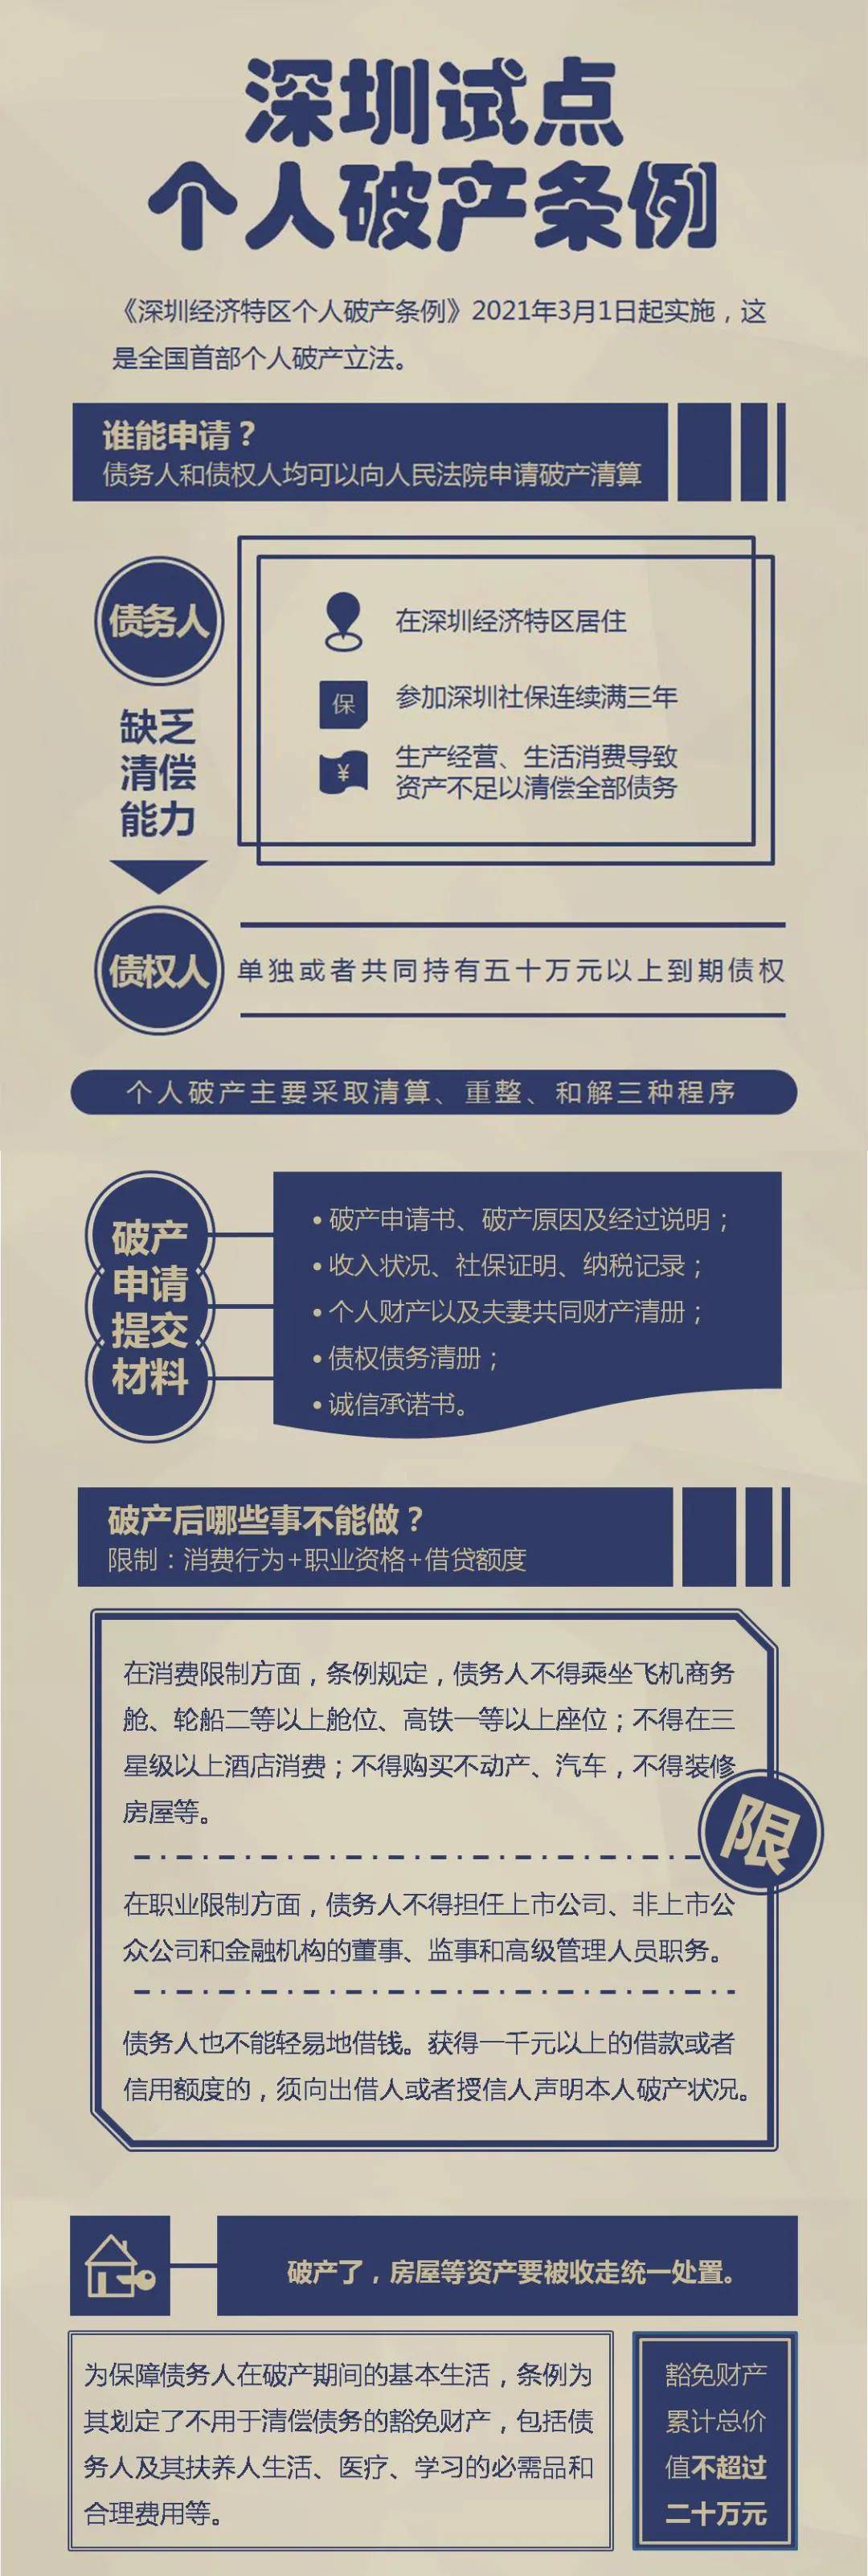 全国首家深圳正式允许个人申请破产